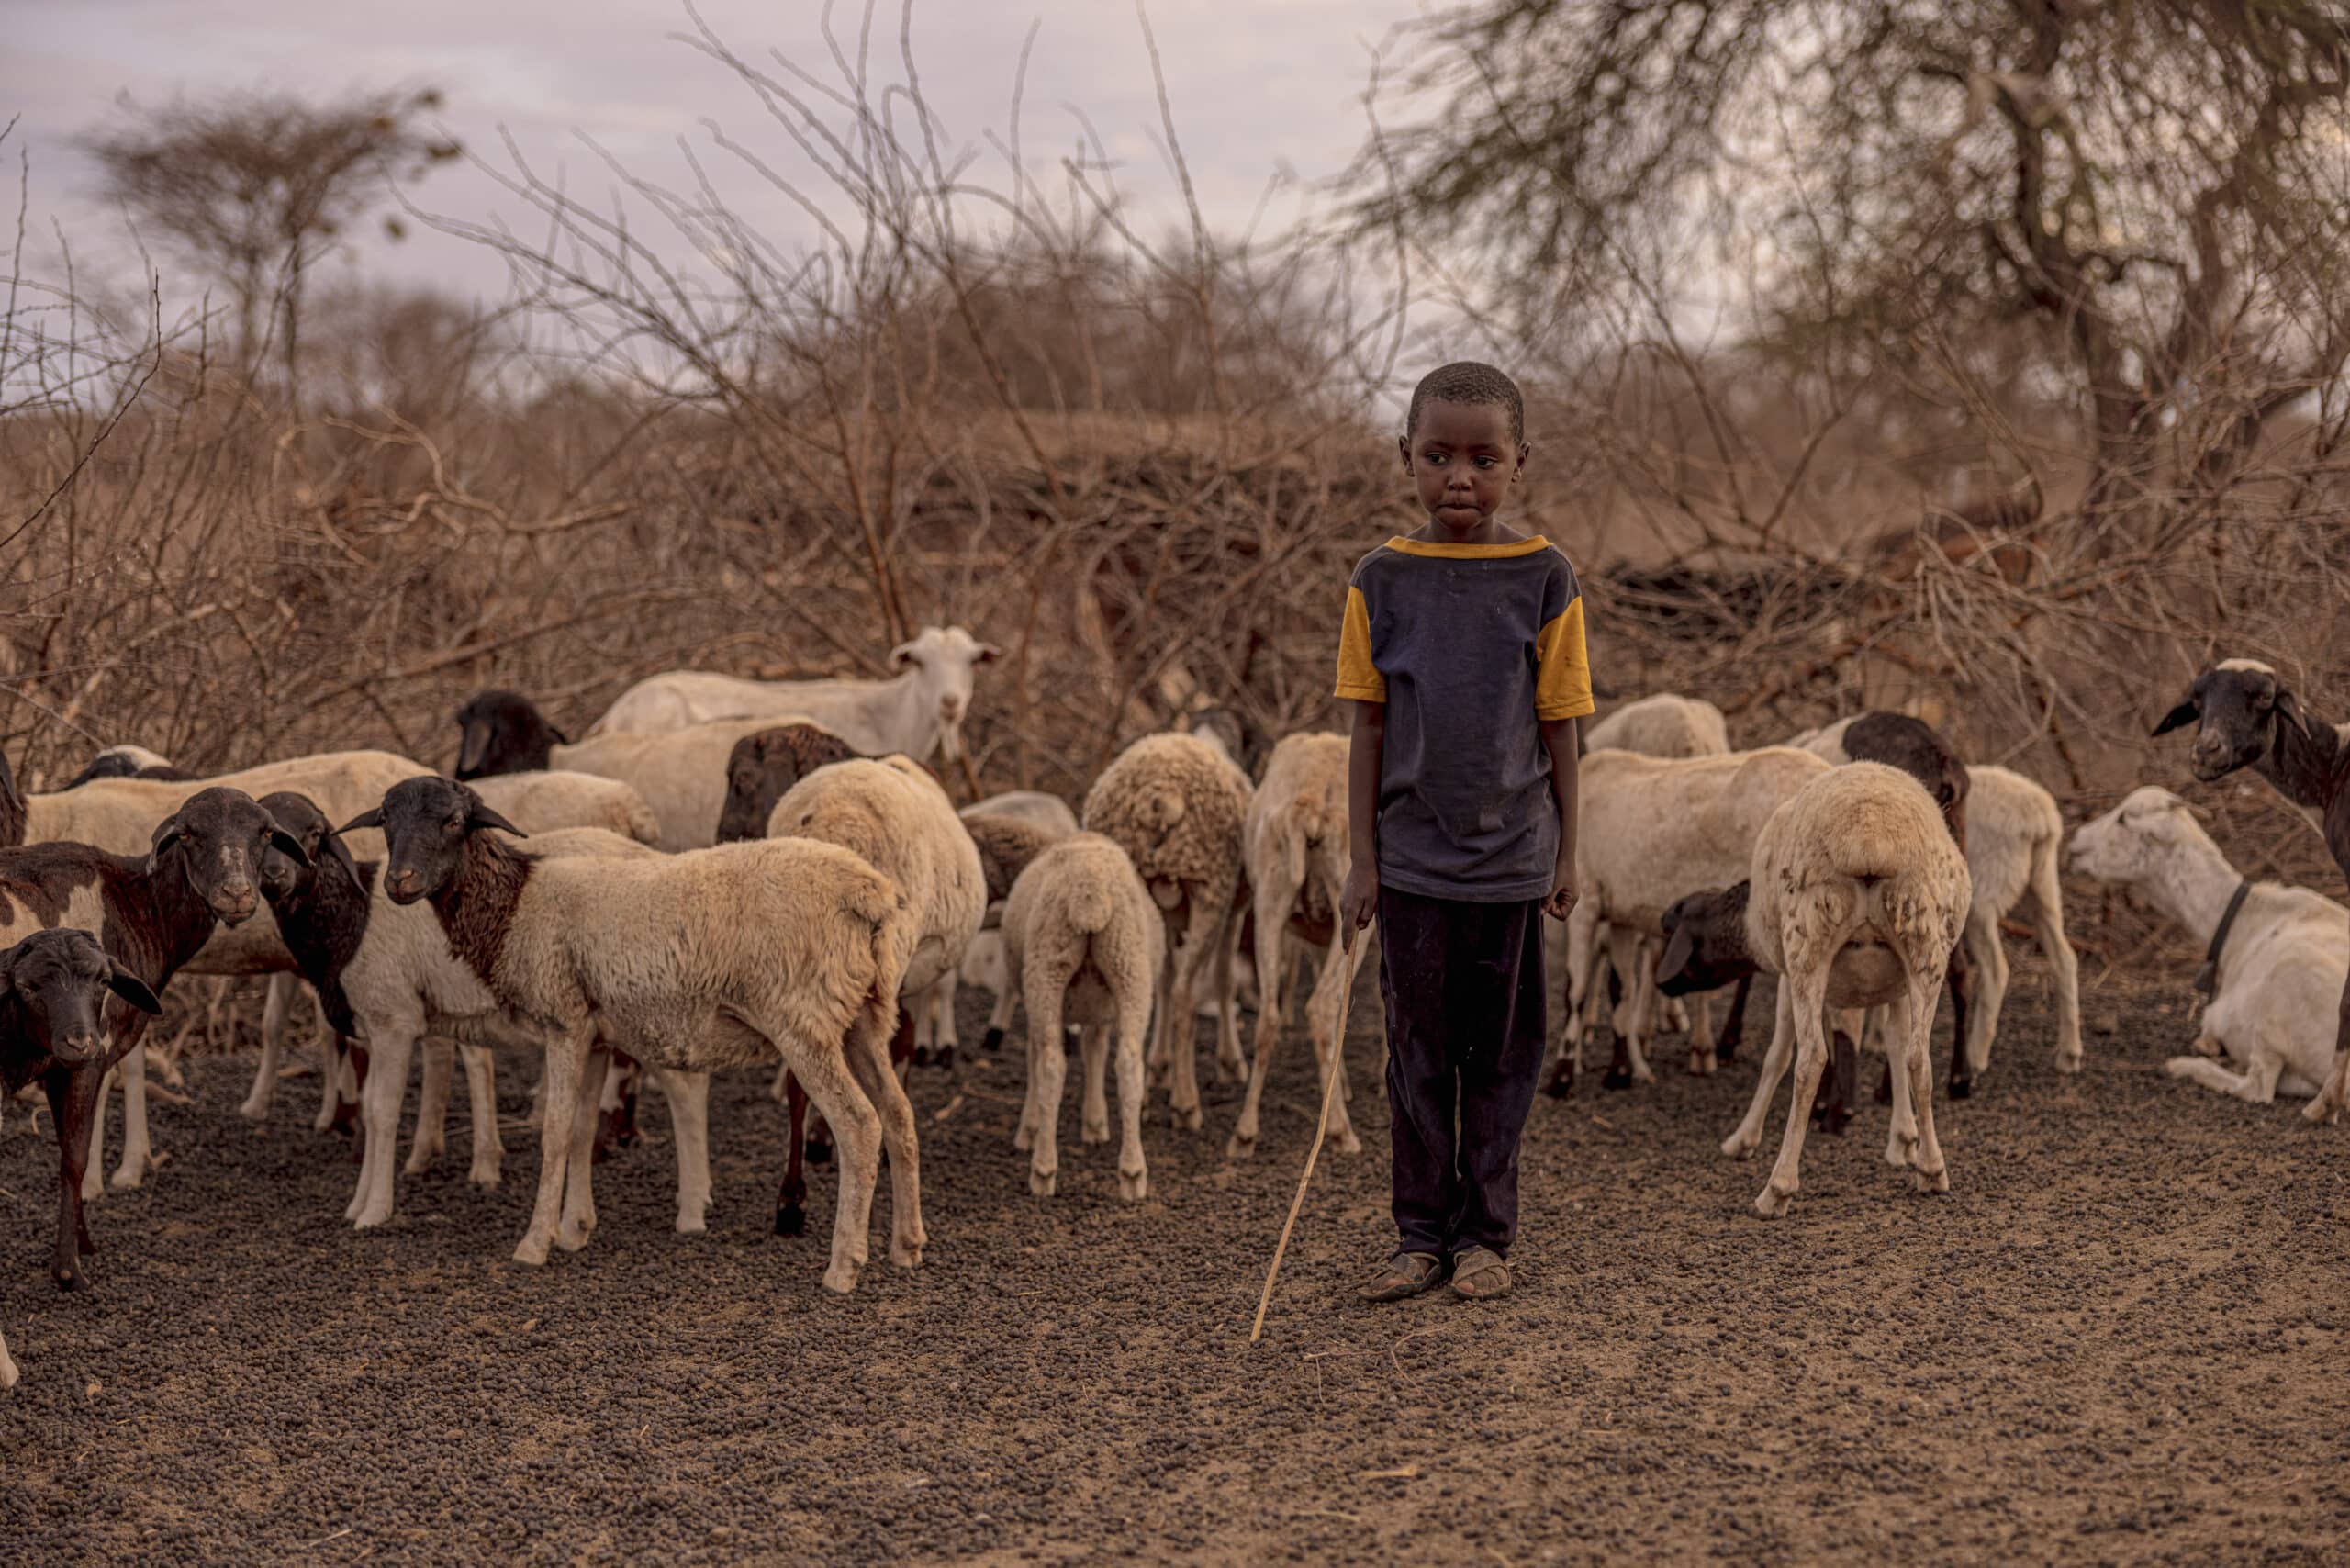 Ein kleiner Junge steht mit nachdenklichem Gesichtsausdruck inmitten einer Schafherde in einer trockenen, buschigen Landschaft, hält einen Stock und hat einen Stock in der Hand. © Fotografie Tomas Rodriguez